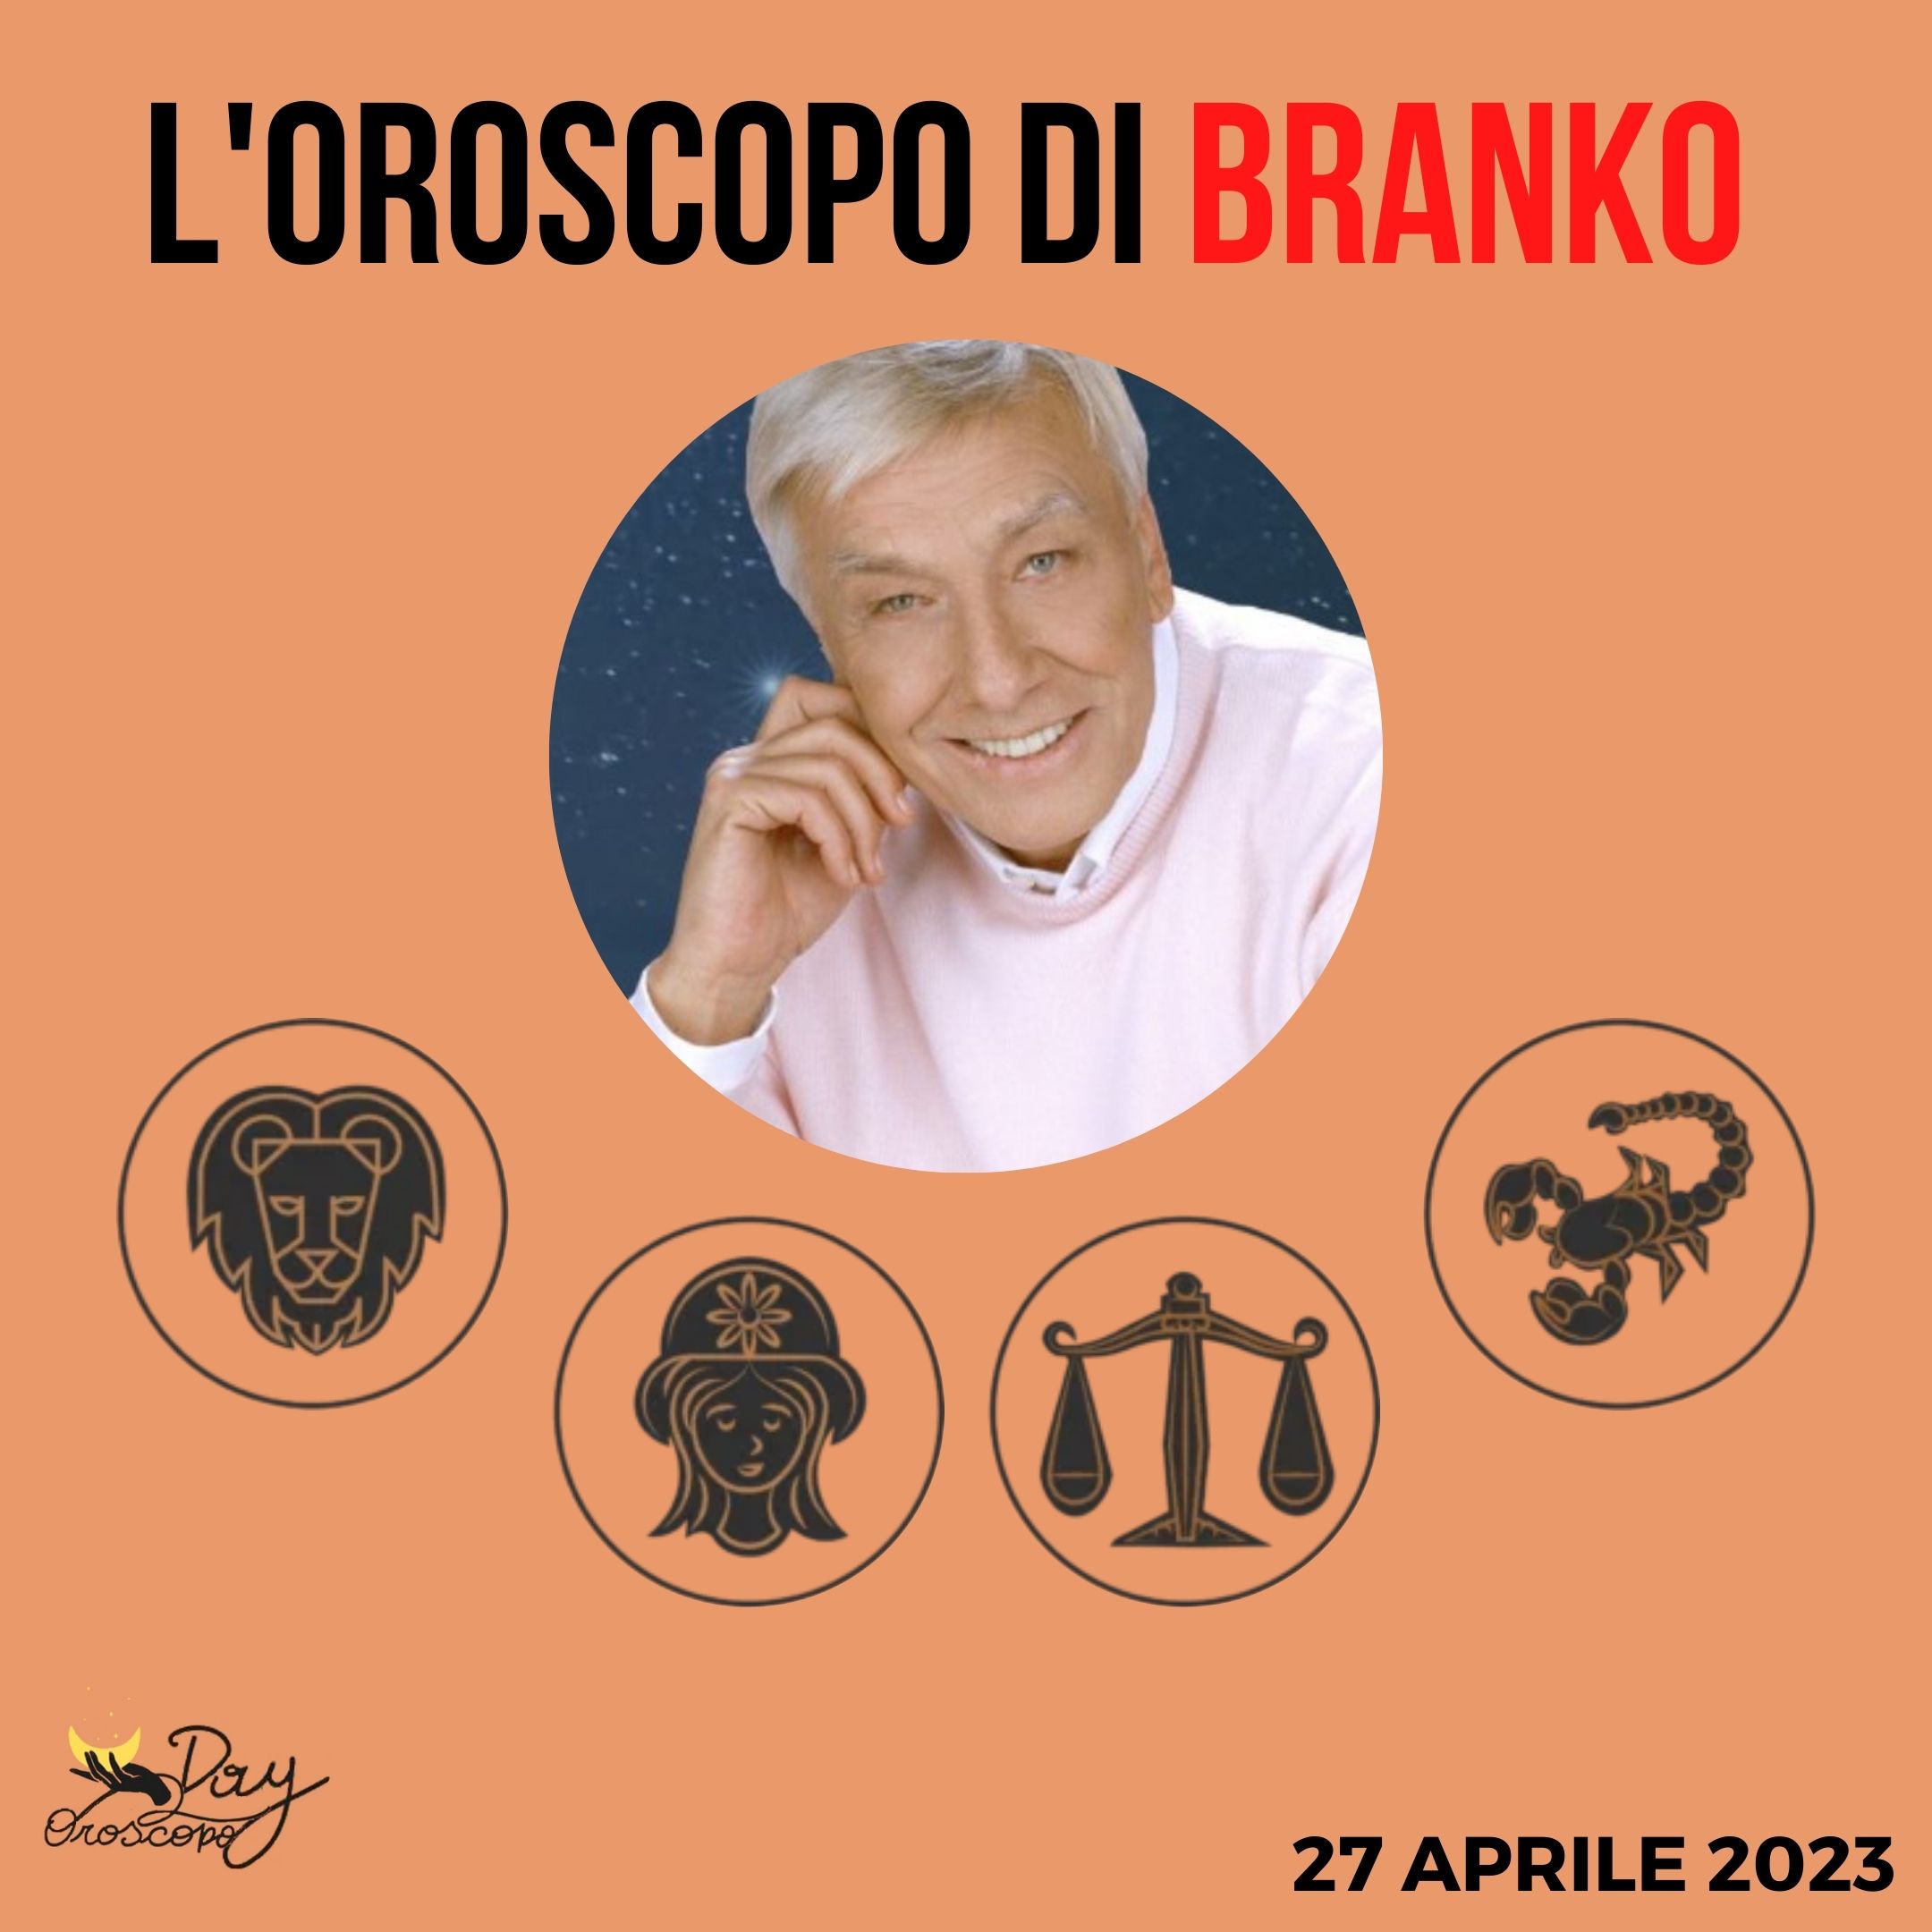 Oroscopo oggi domani Branko 27 aprile Leone Vergine Bilancia Scorpione